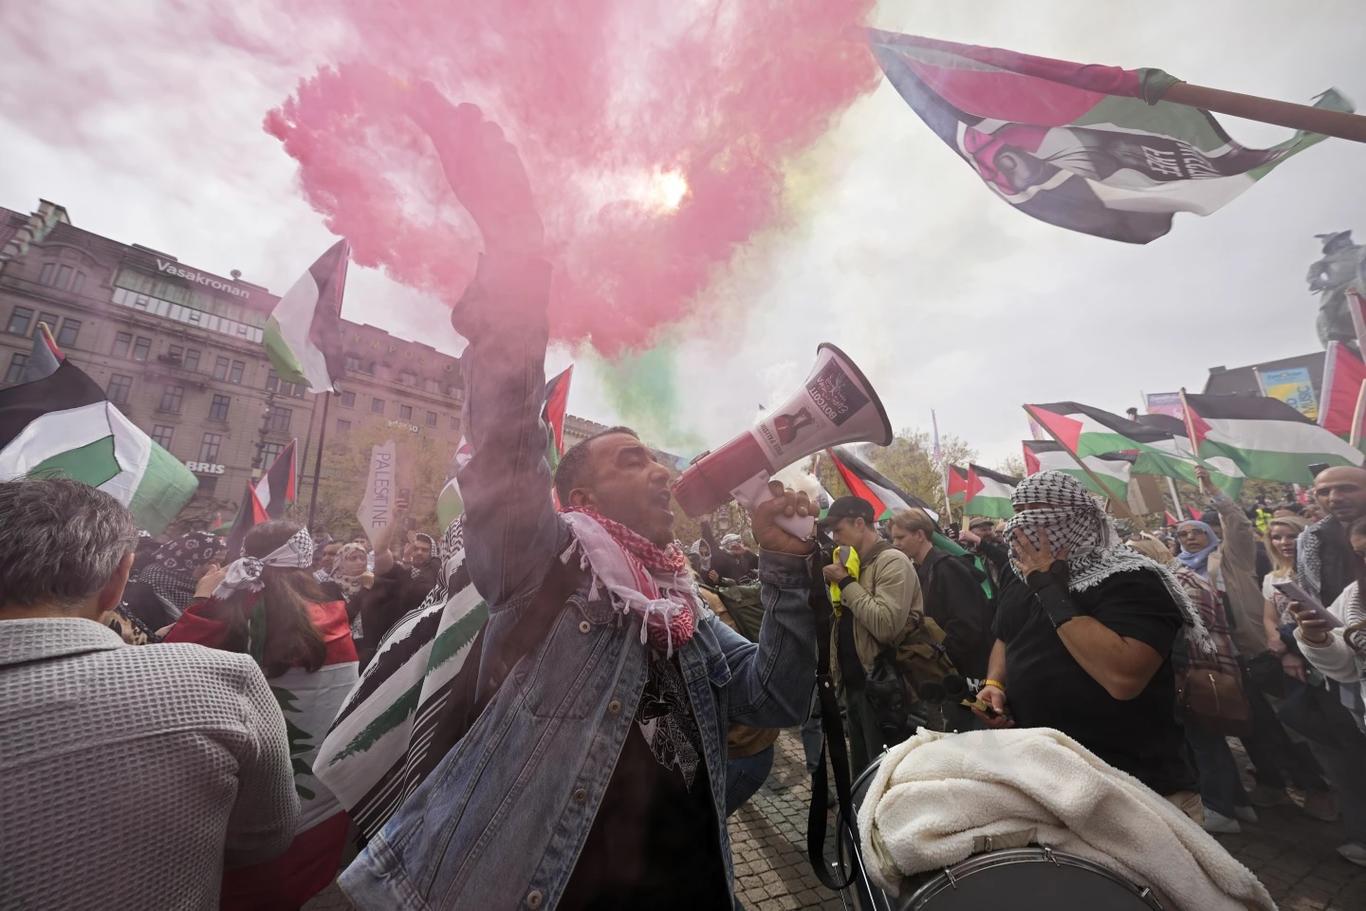 У Швеції тисячі пропалестинських протестувальників вийшли на демонстрацію проти участі Ізраїлю в «Євробаченні»